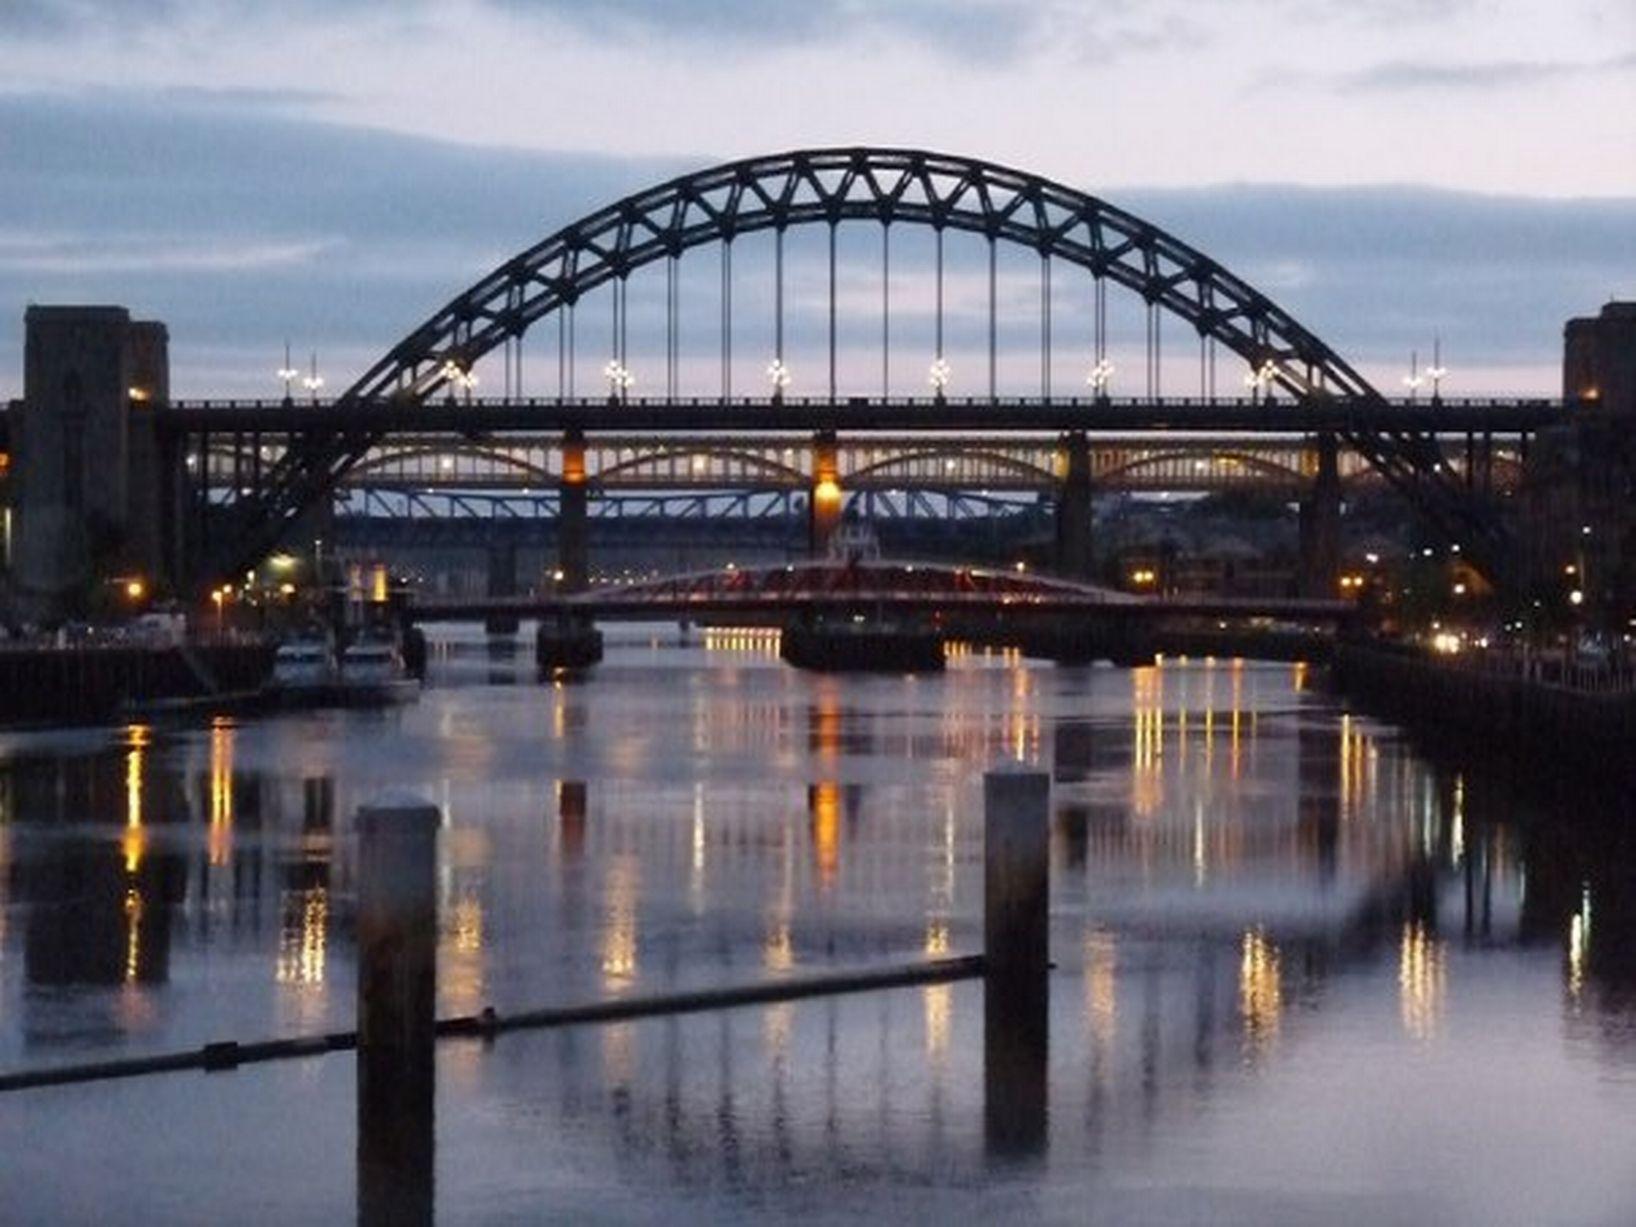 fabulous image of Newcastle's Tyne Bridge